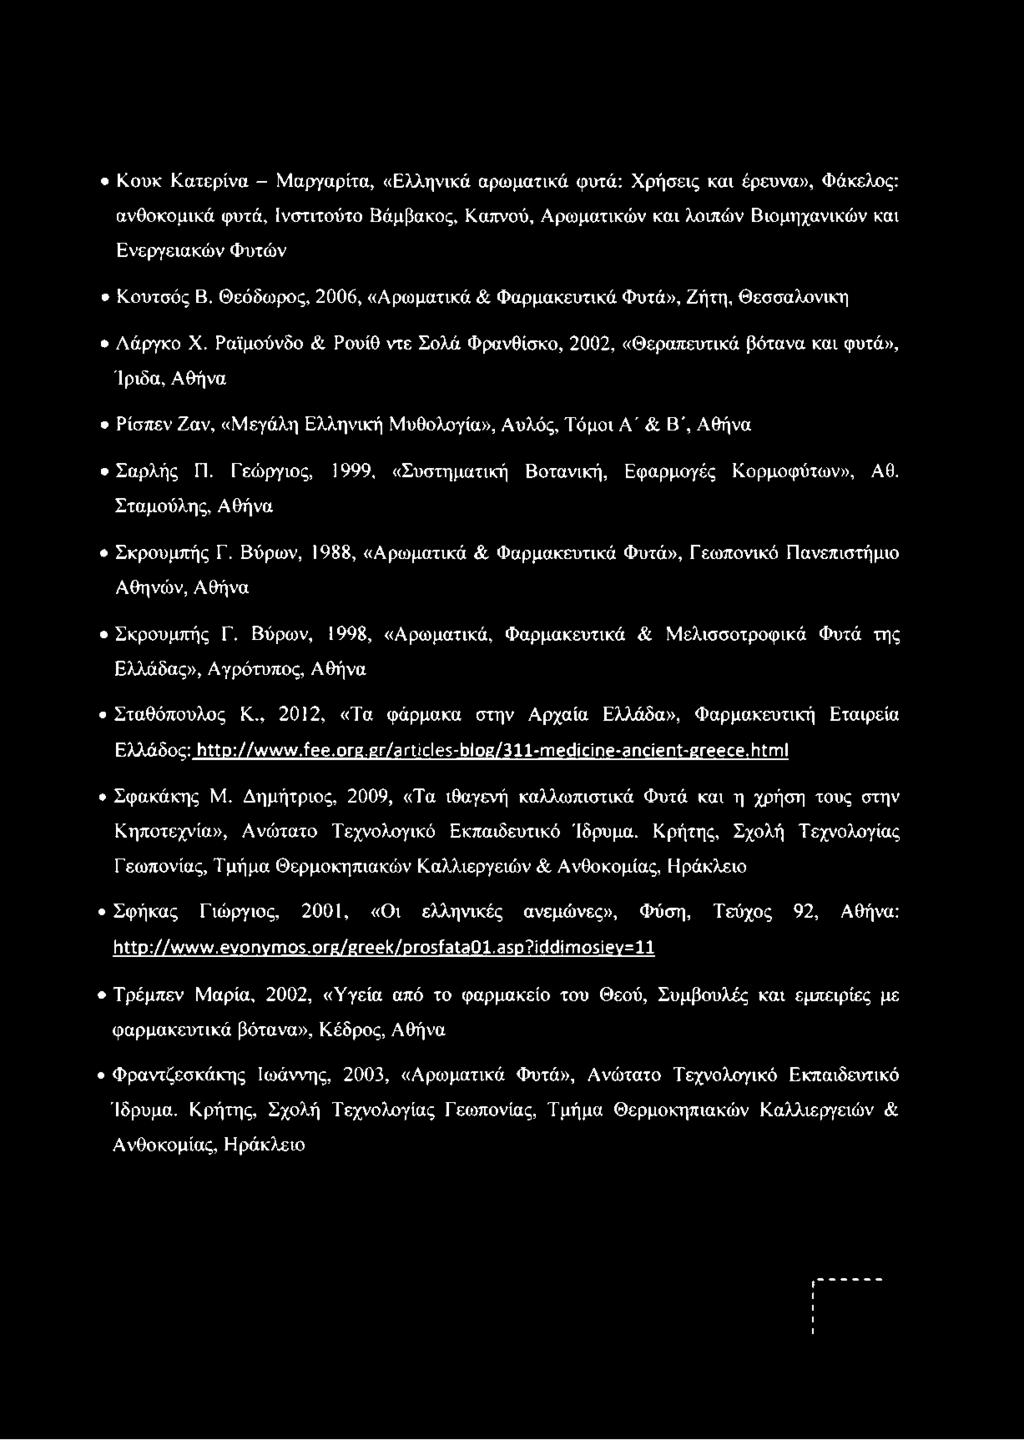 Ραϊμούνδο & Ρουίθ ντε Σολά Φρανθίσκο, 2002, «Θεραπευτικά βότανα και φυτά», Ίριδα, Αθήνα Ρίσπεν Ζαν, «Μεγάλη Ελληνική Μυθολογία», Αυλός, Τόμοι Α ' & Β', Αθήνα Σαρλής Π.